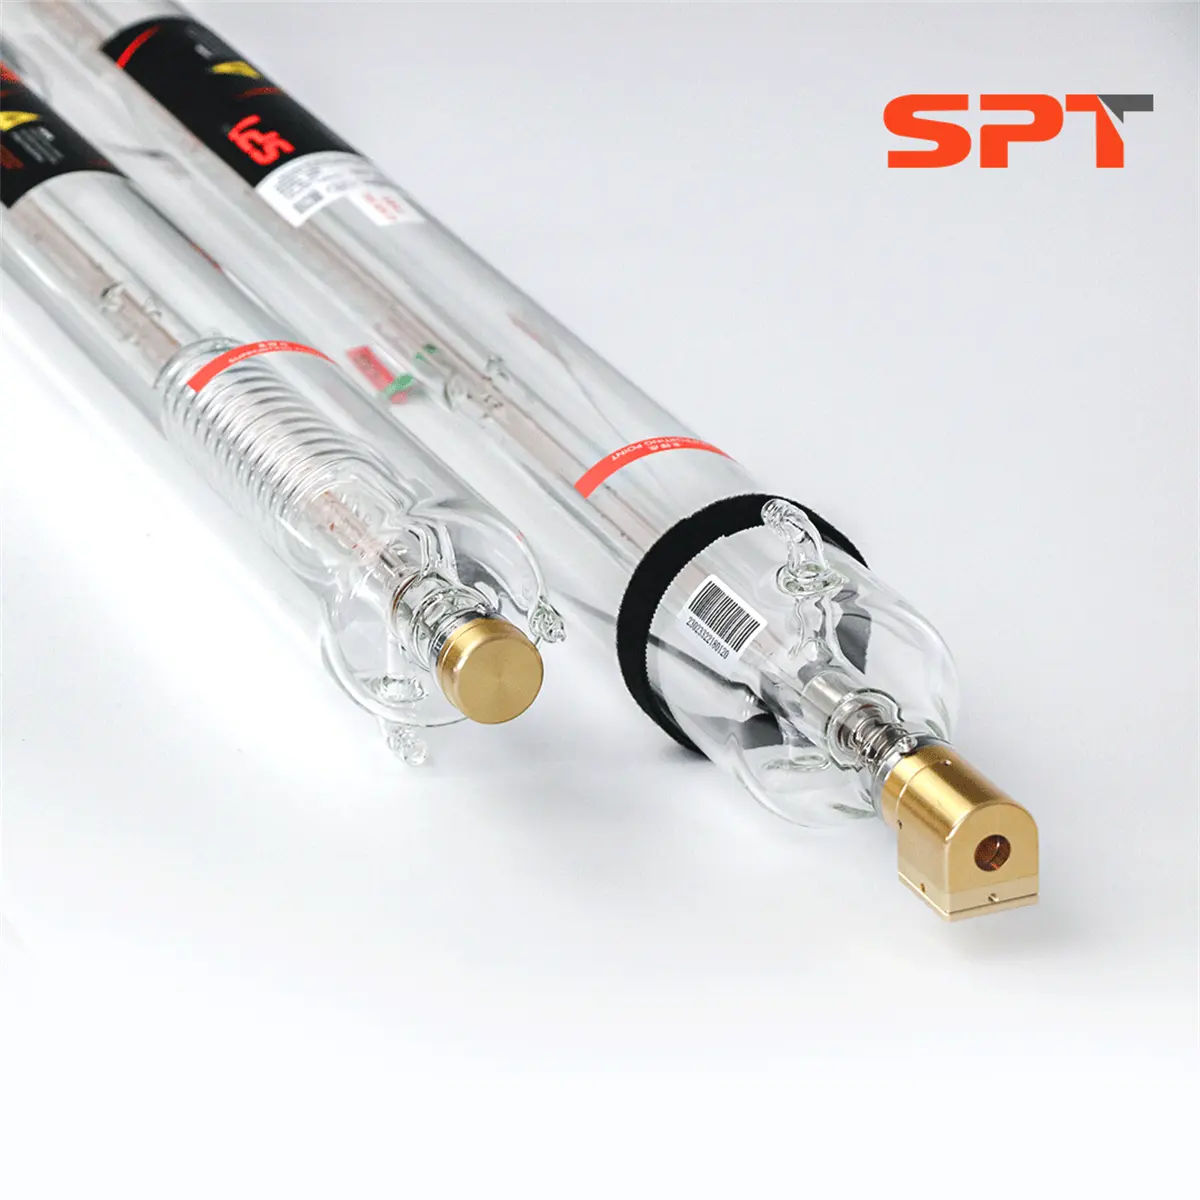 SPT-tubo láser CO2 de alta potencia de 100w, puntero rojo para corte láser, materiales no metálicos como acrílico/MDF